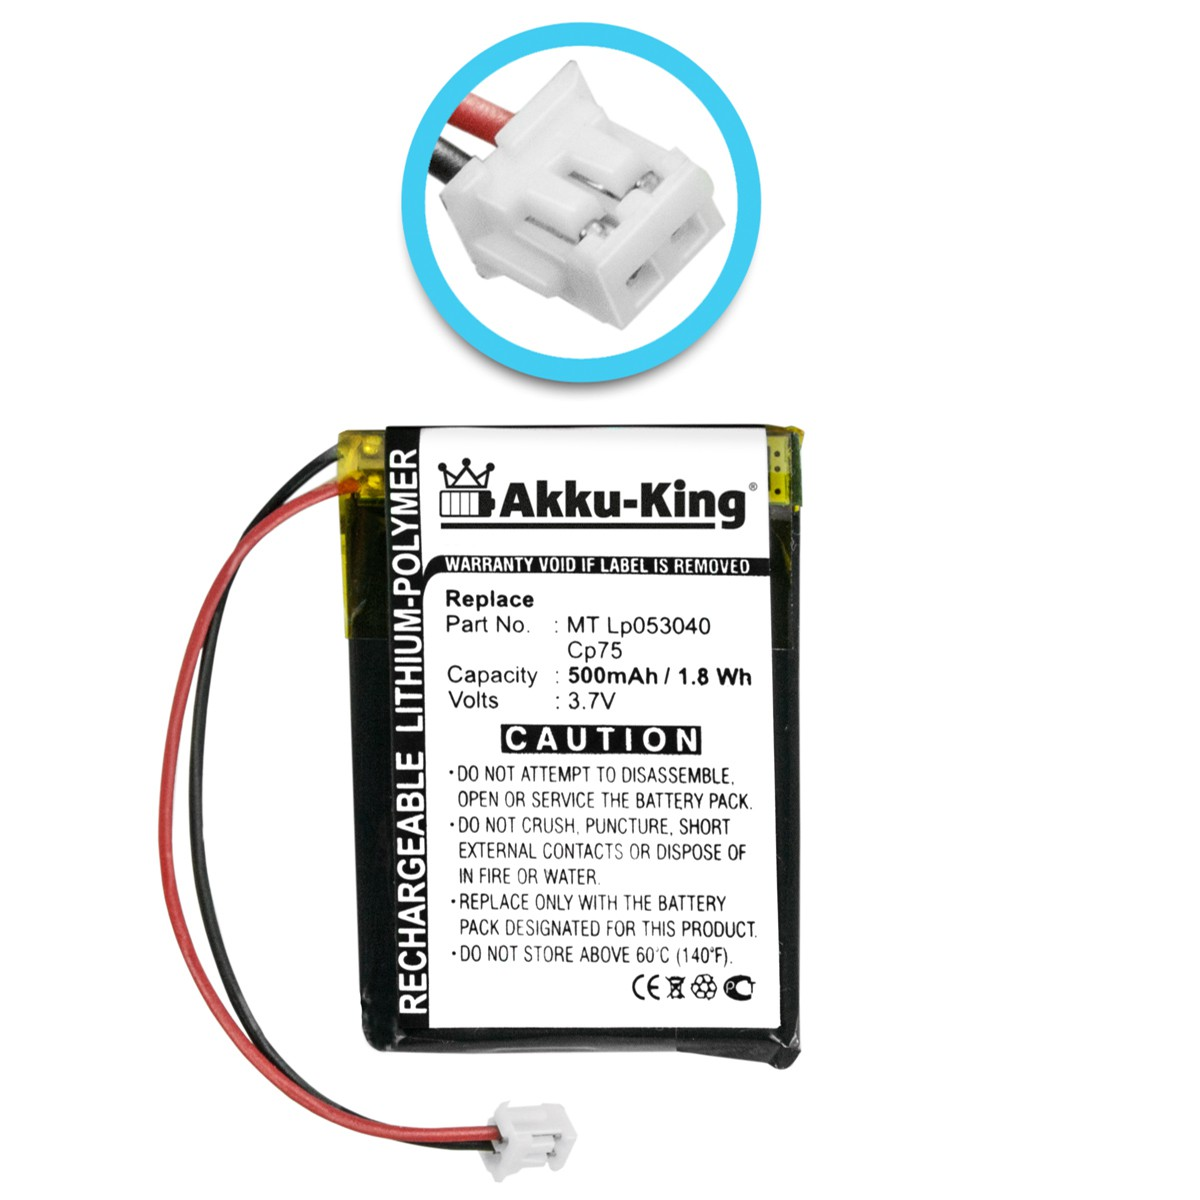 AKKU-KING Akku 500mAh mit LP053040 Geräte-Akku, 3.7 Volt, kompatibel iDect MT Li-Polymer